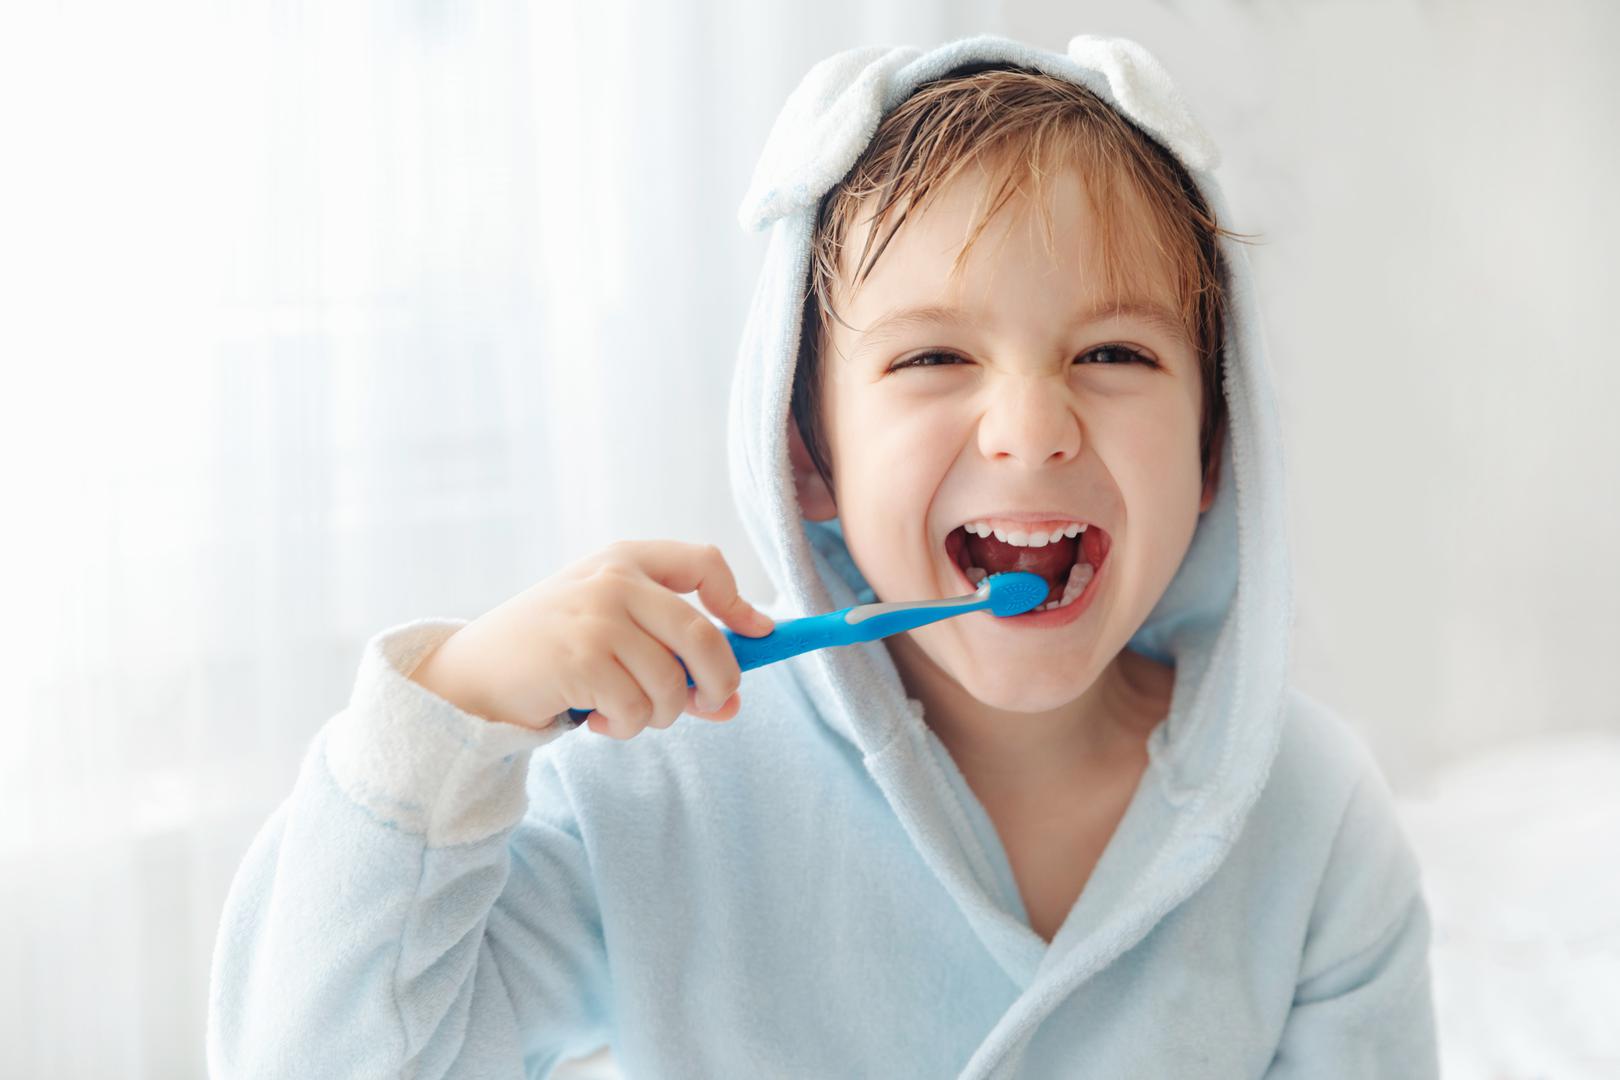 Obavezno četkajte zube prije doručka: 'Uvijek četkajte zube prije doručka', kaže dr. Jethwa, 'Preko noći stvaraju se i plak i bakterije, pa prvo što treba učiniti je oprati zube kako ne bismo povećali opterećenje bakterijama. Također biste trebali pričekati 30 minuta nakon jela prije pranja zuba jer se na taj način izbjegava pranje kiselina iz hrane oko zuba, što može uzrokovati trošenje zuba i osjetljivost'.